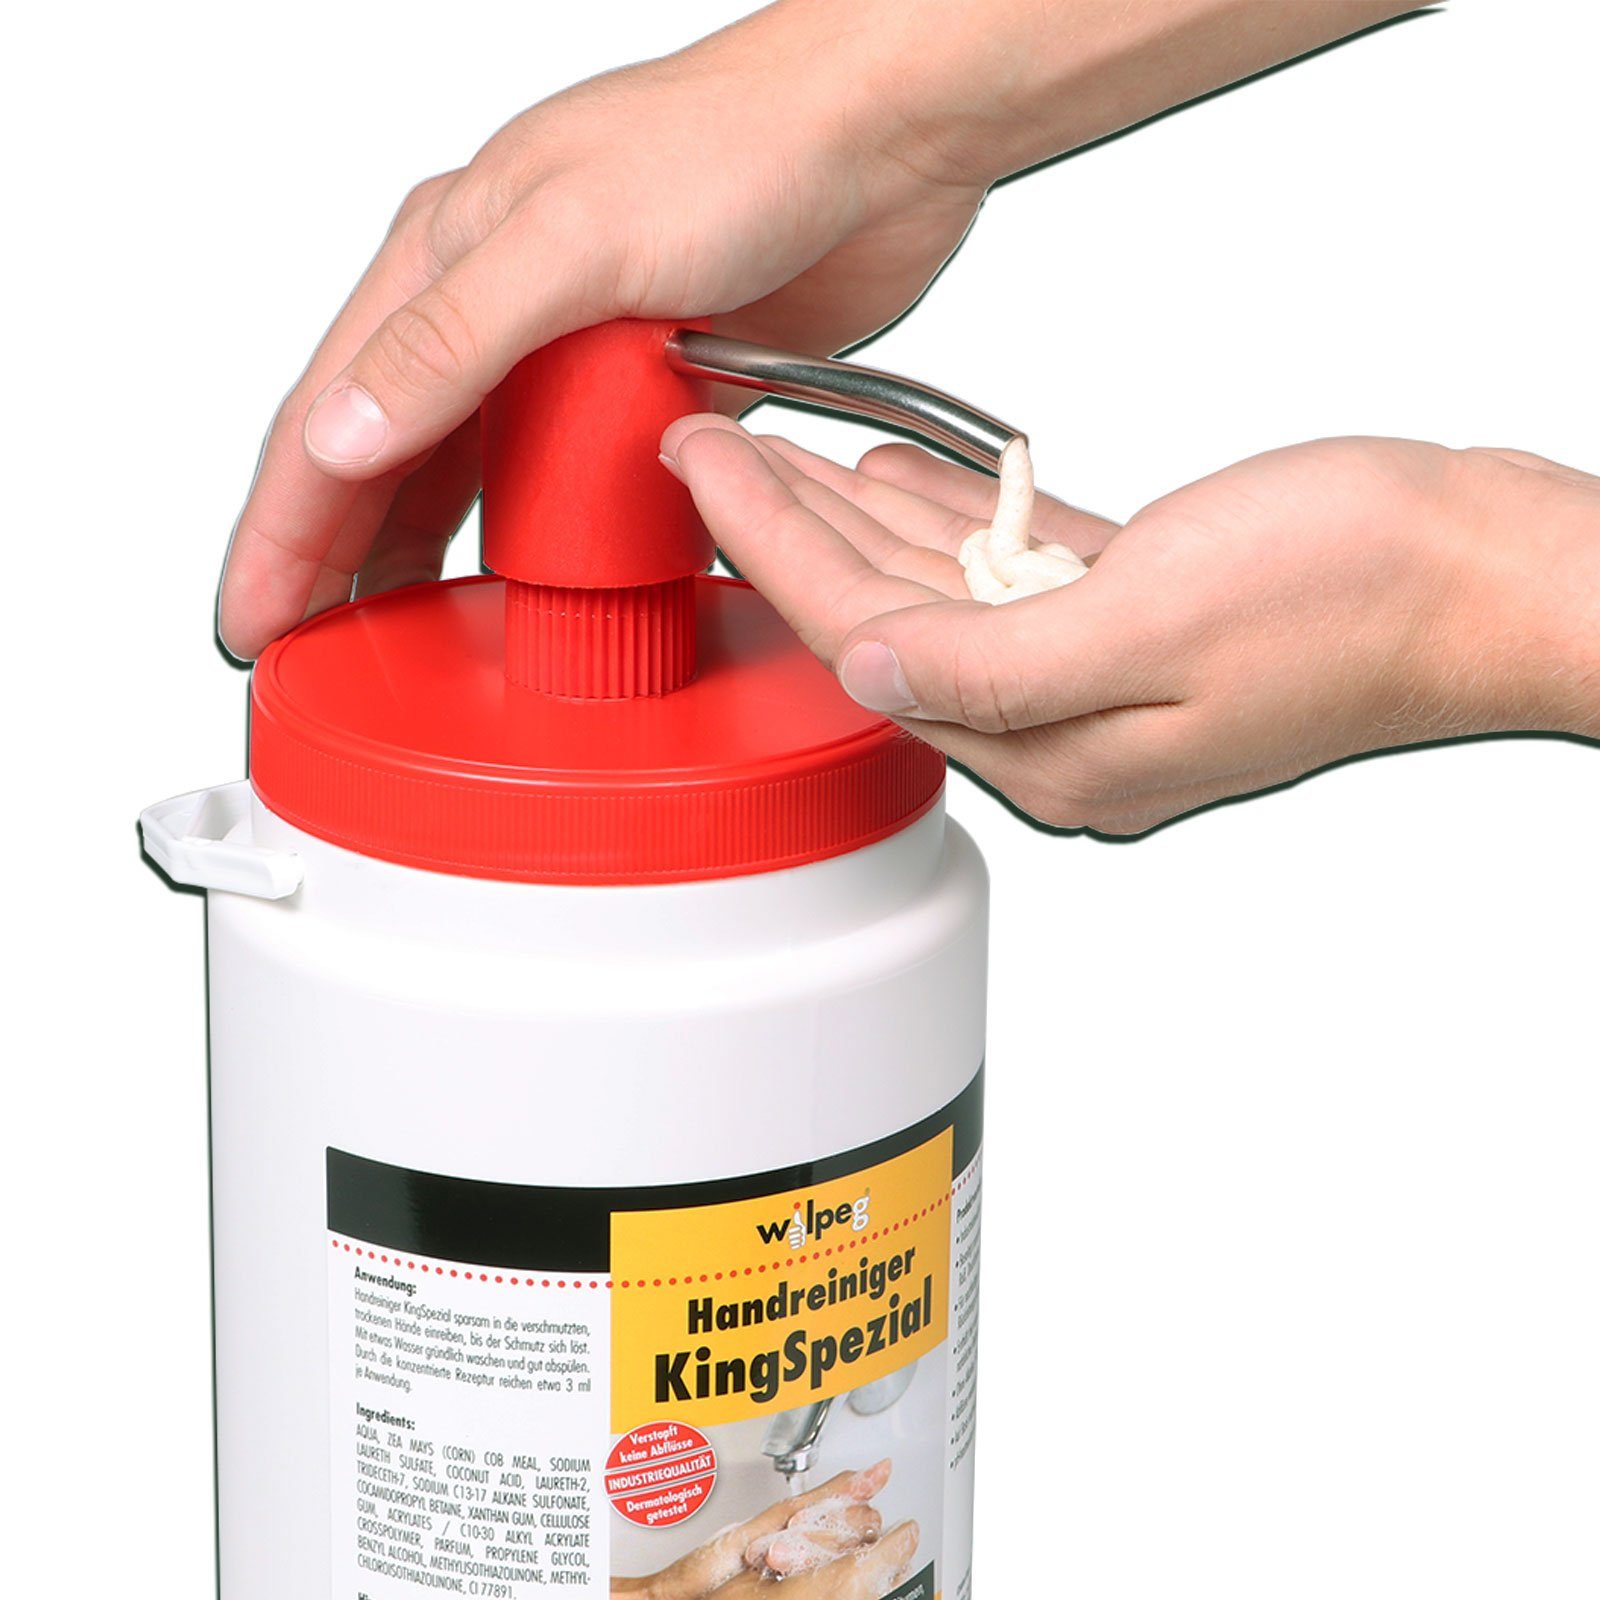 Reinigungspaste 6L KingSpezial Handcreme + wilpeg® Spender, Handwaschpaste Handreiniger